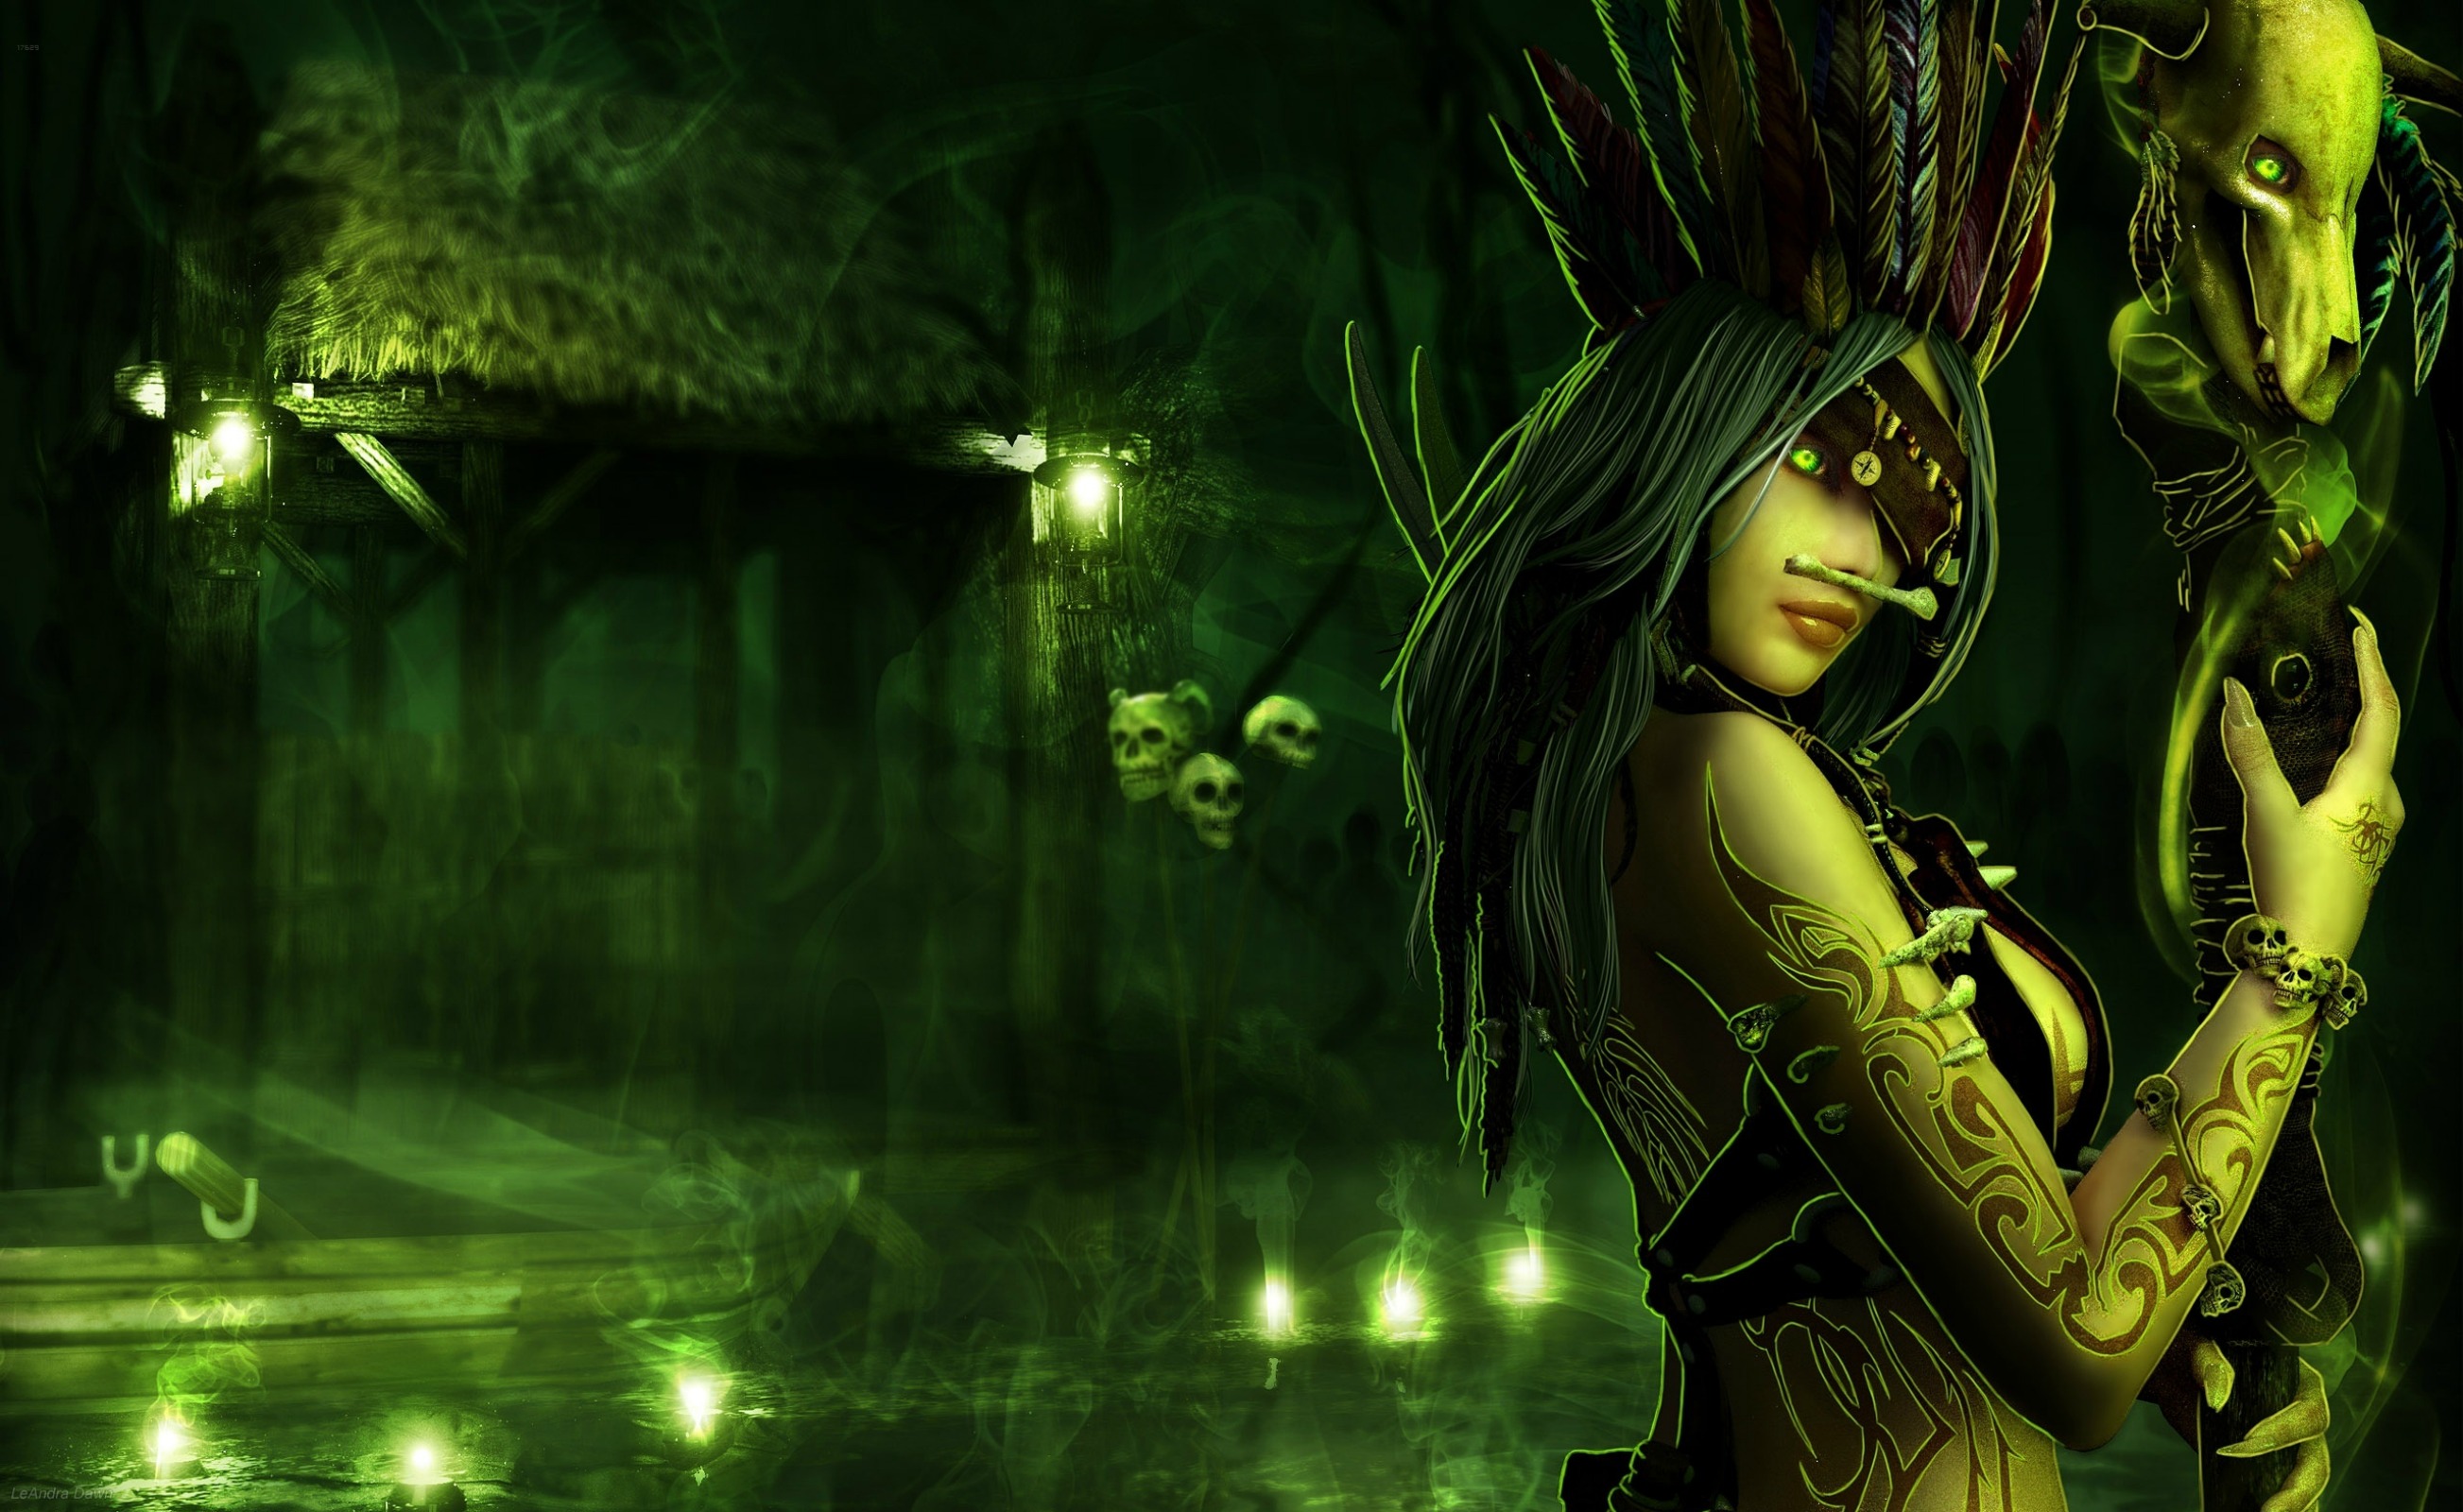 fond d'écran de sorcière hd,vert,oeuvre de cg,jungle,personnage fictif,compositing numérique